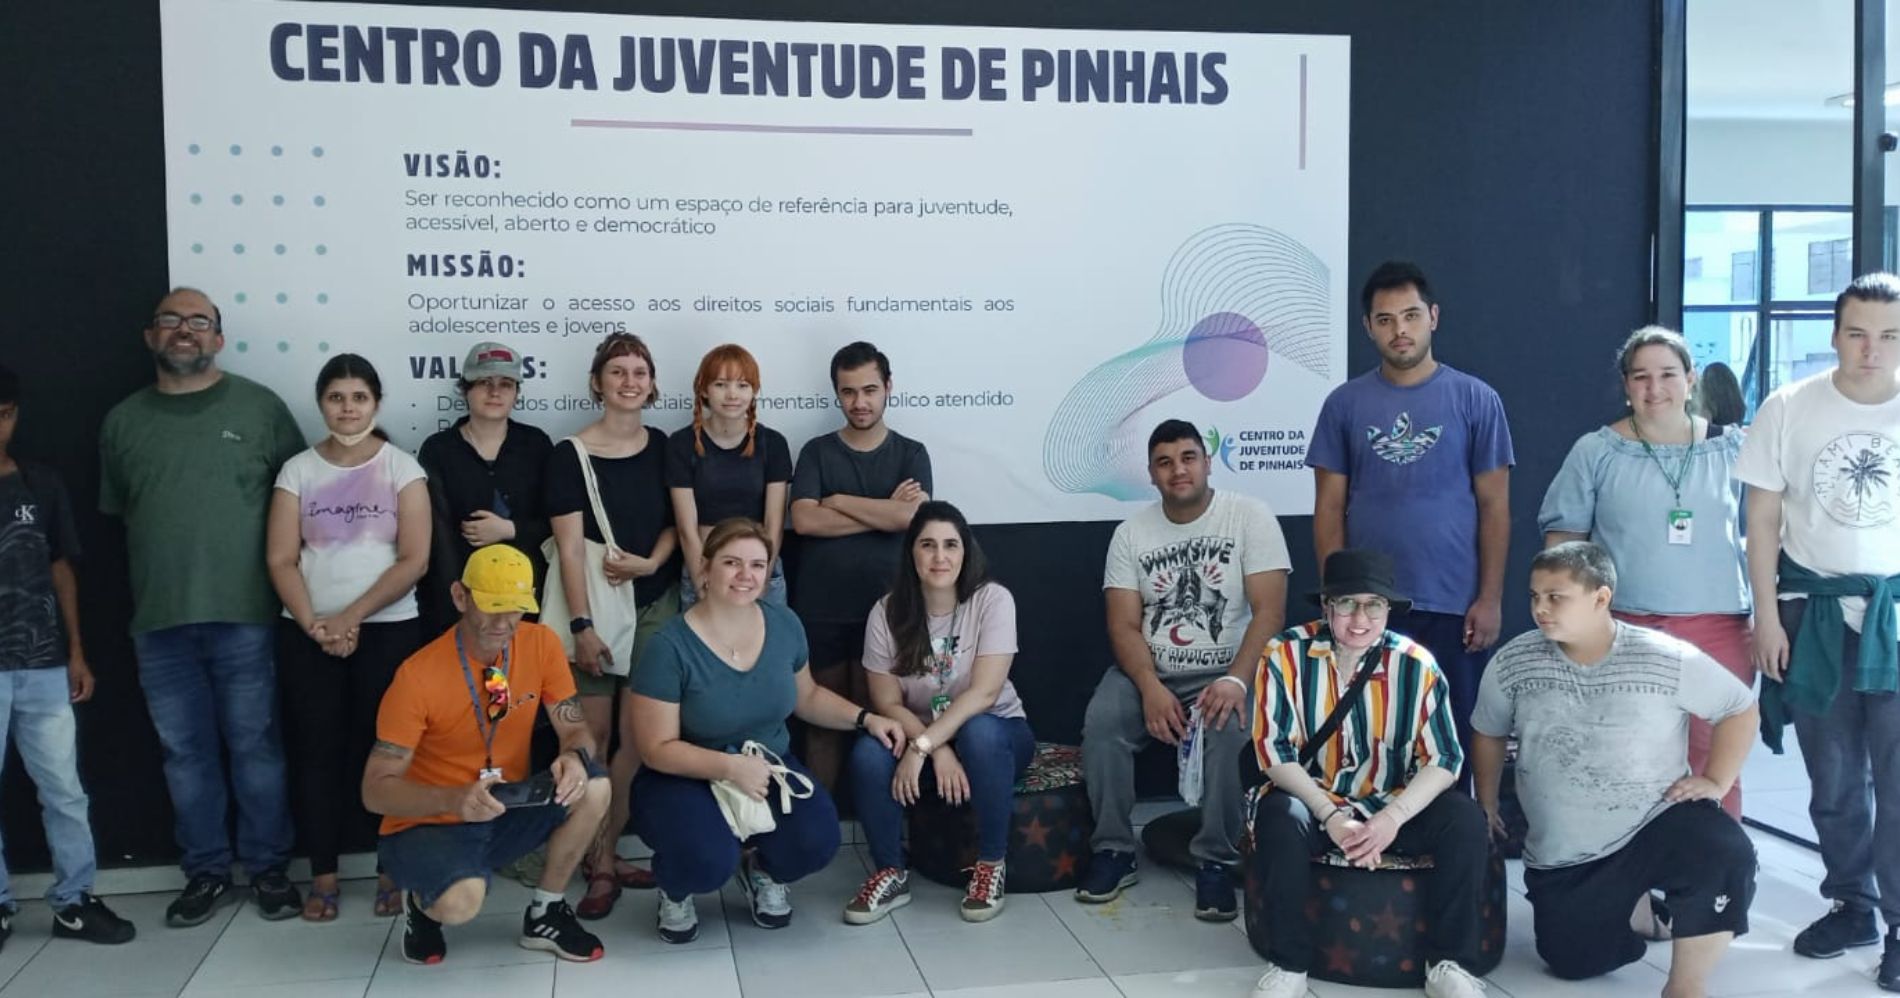 Projeto "Chega Mais" conduz jovens de diversas regiões de Pinhais ao Centro da Juventude